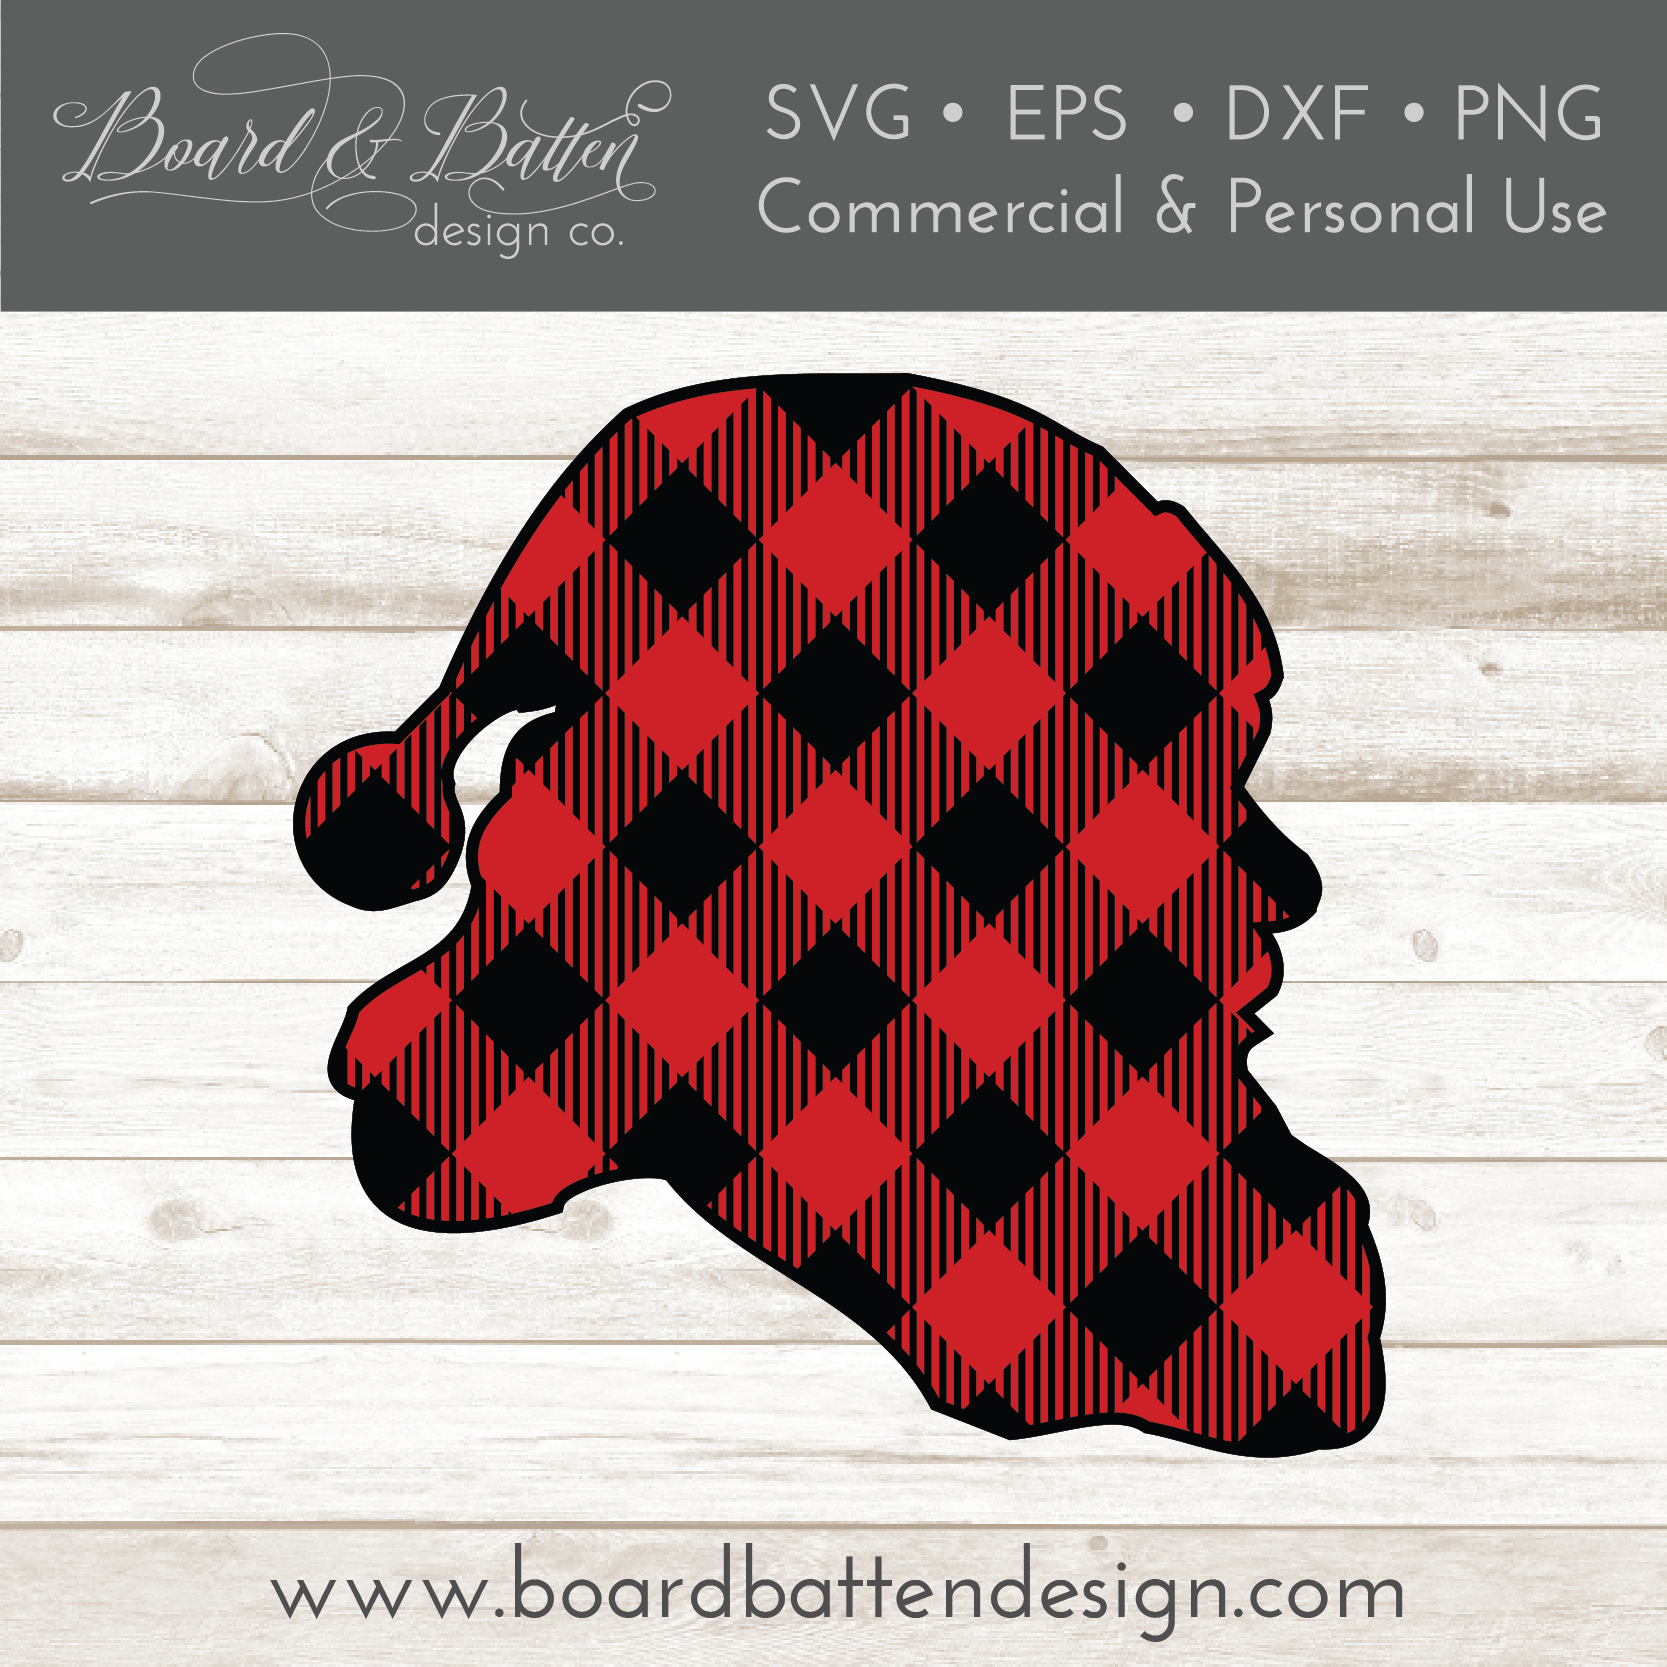 Download Buffalo Plaid Santa Head Silhouette Layered Svg Board Batten Design Co